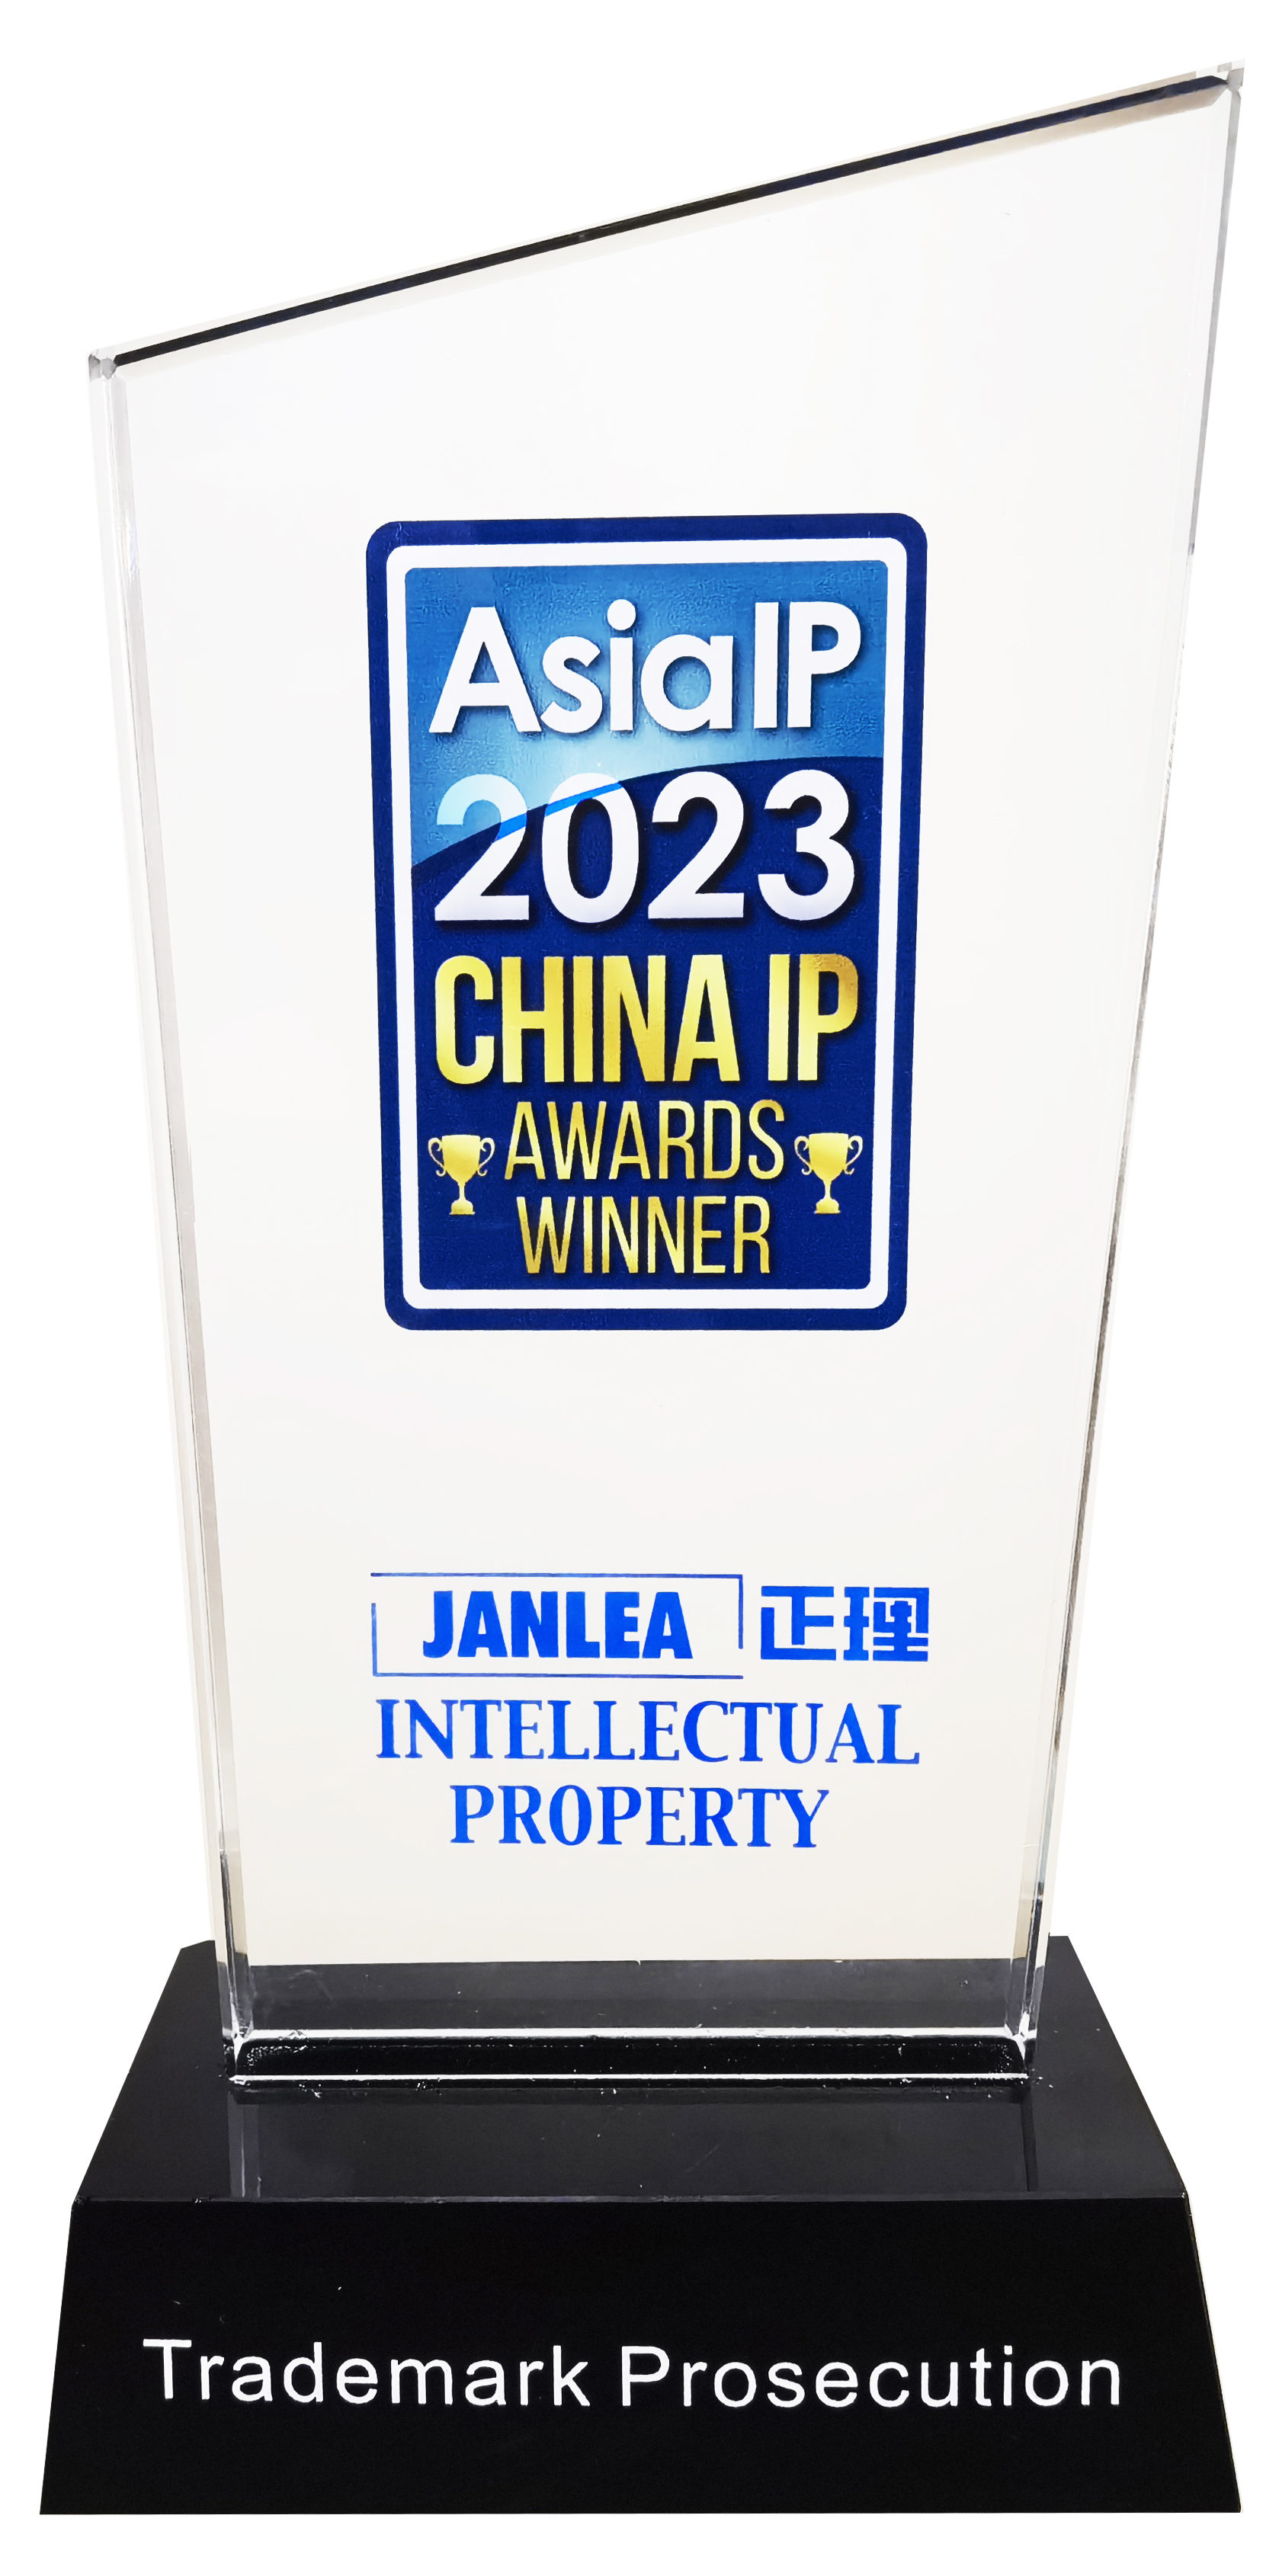 Asia IP 2023  CHINA  IP  AWARDS  WINNER